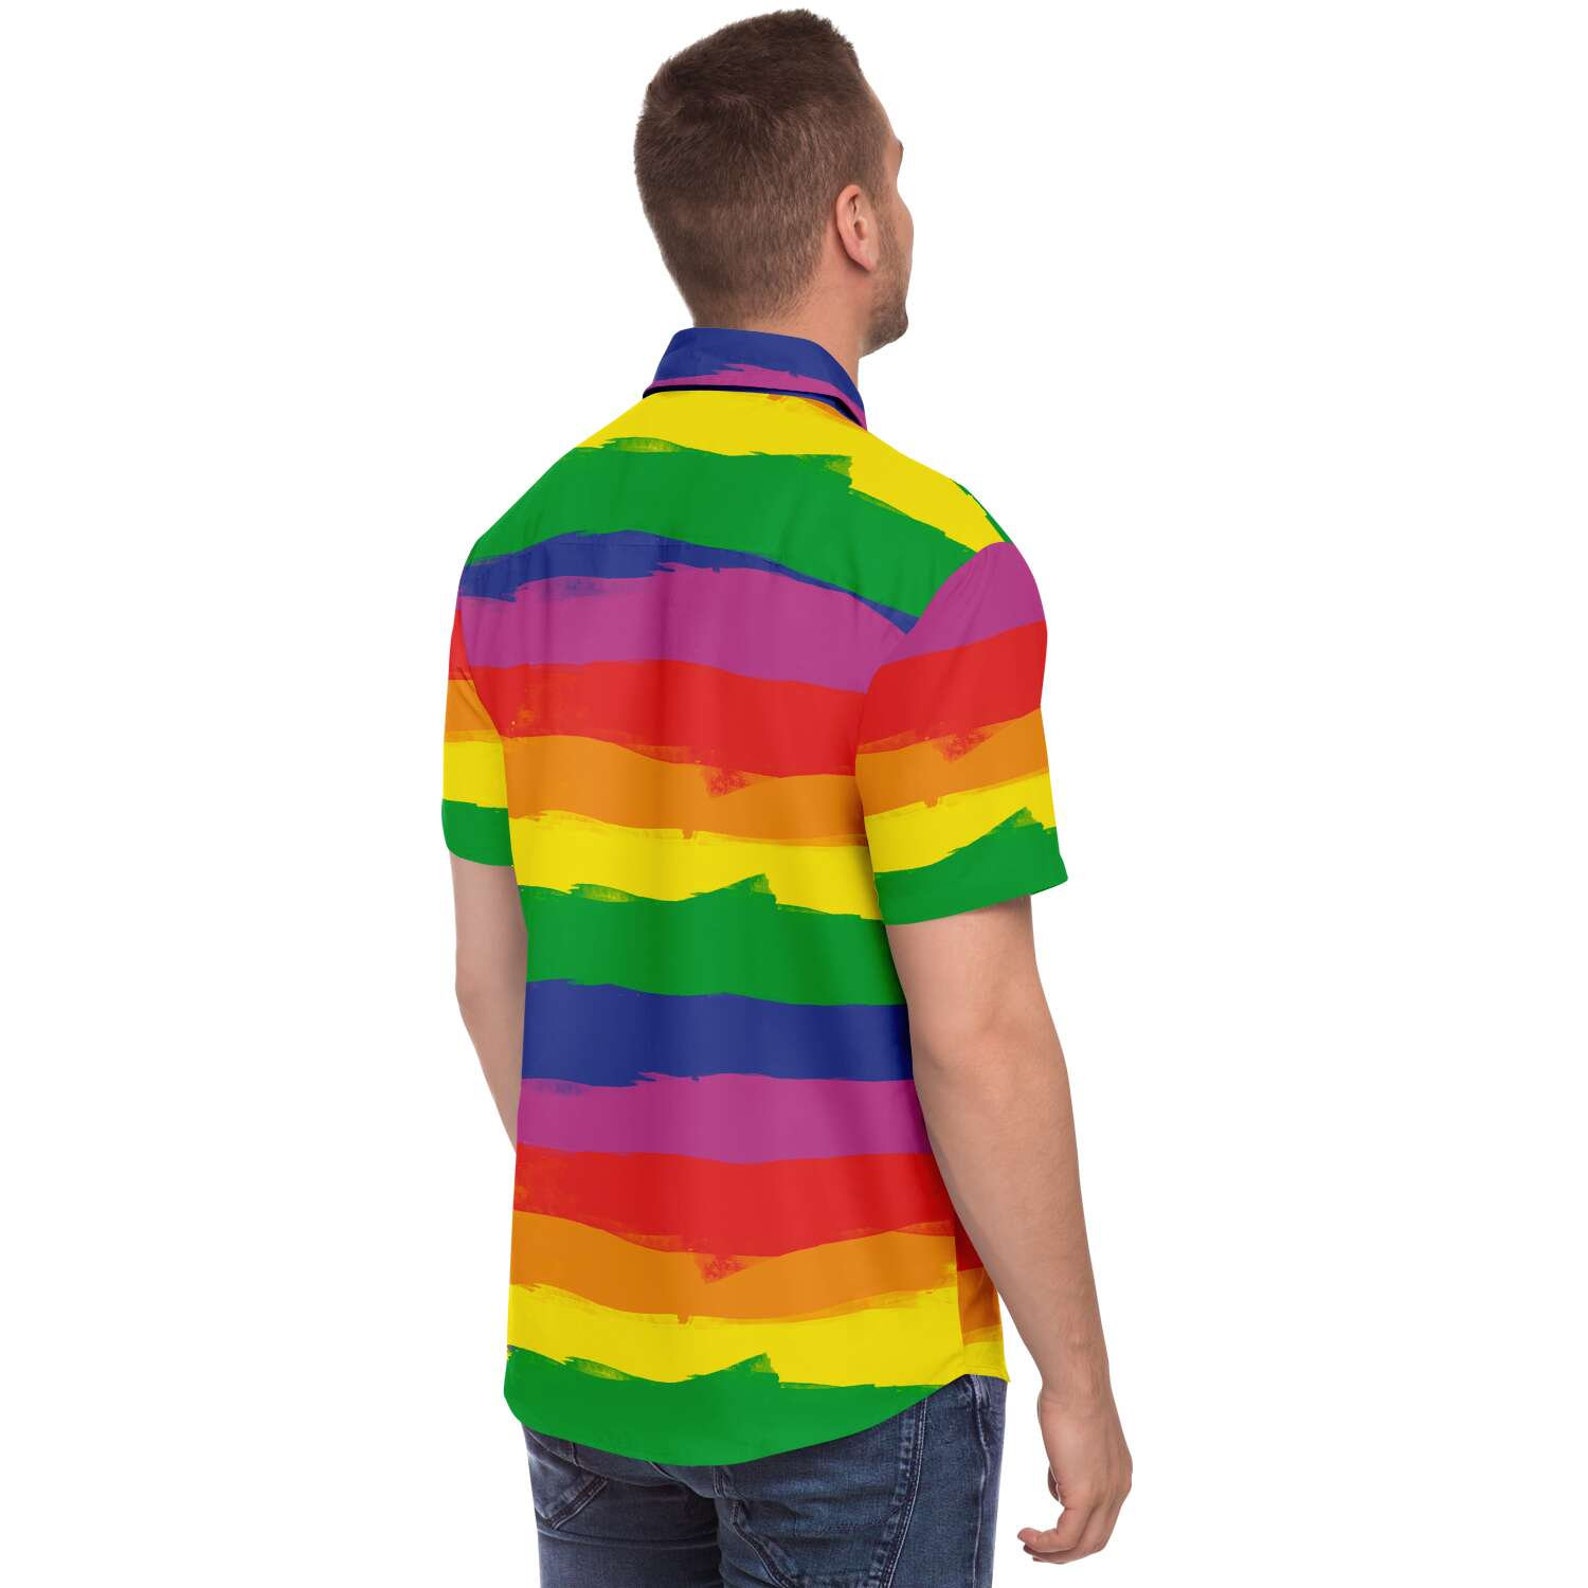 Rainbow Button Down Shirt Gay Pride Shirt Pride Clothing | Etsy